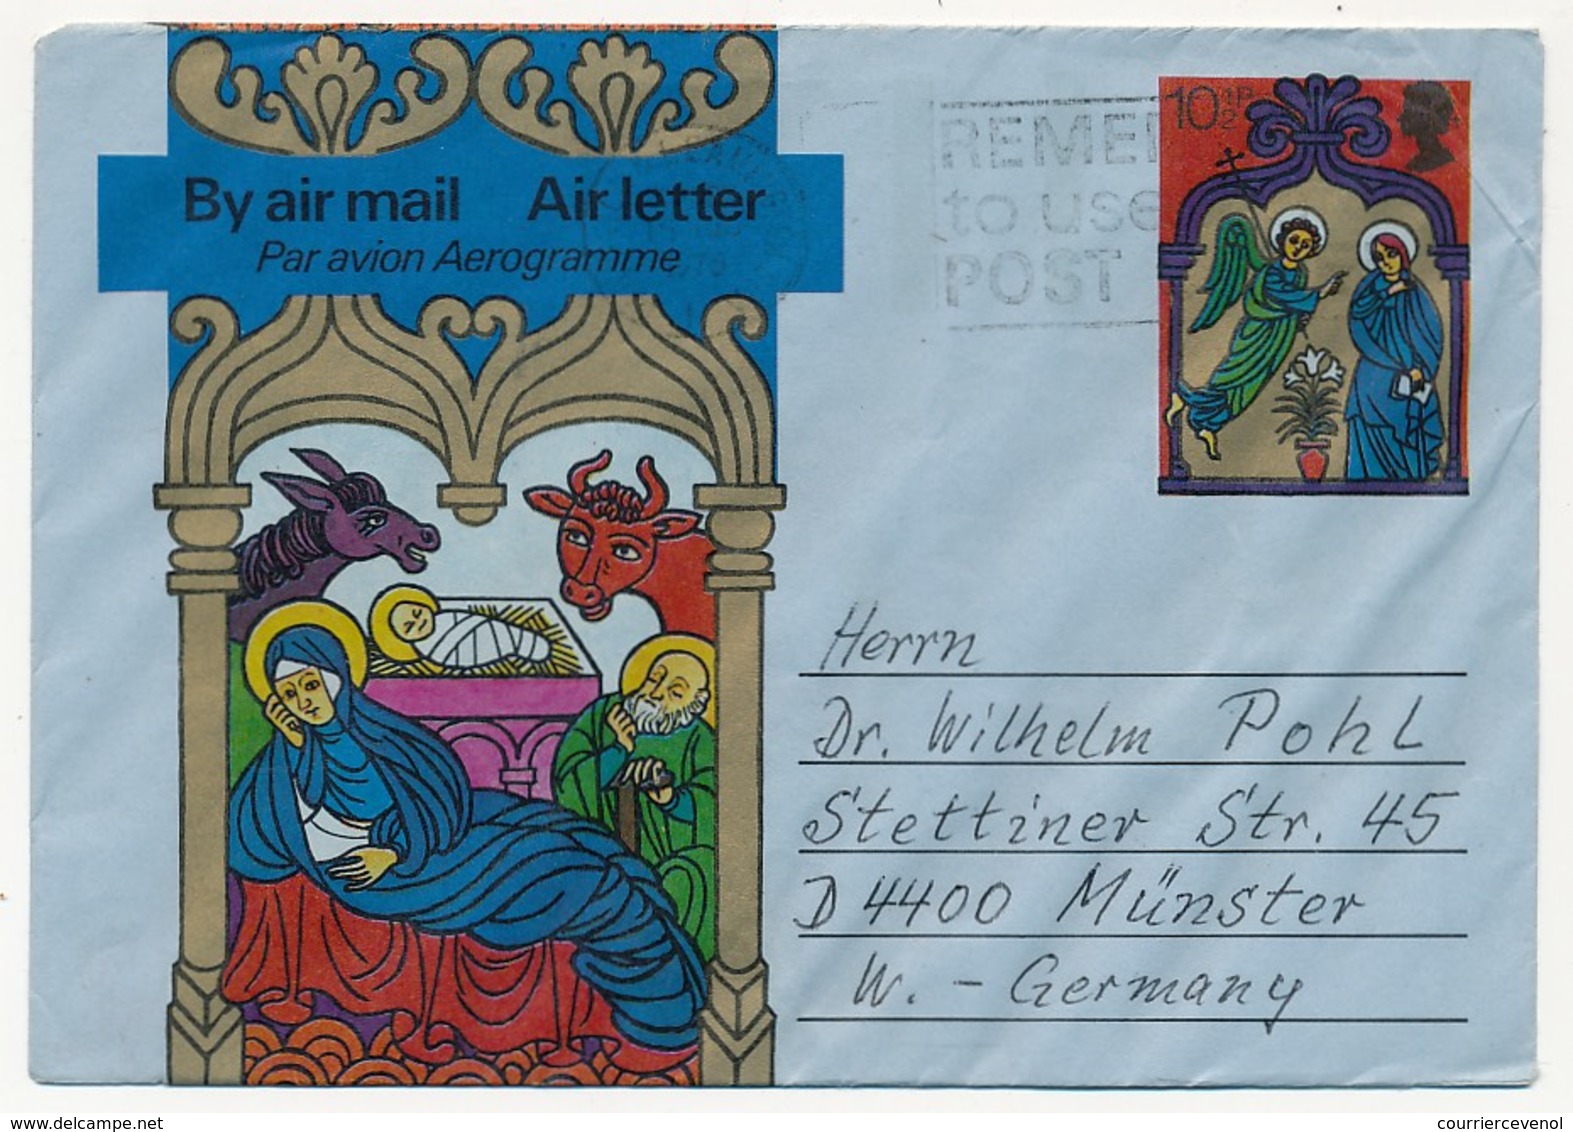 GRANDE BRETAGNE - 12 Entiers postaux divers (aérogrammes, cartes lettres, enveloppes) tous états